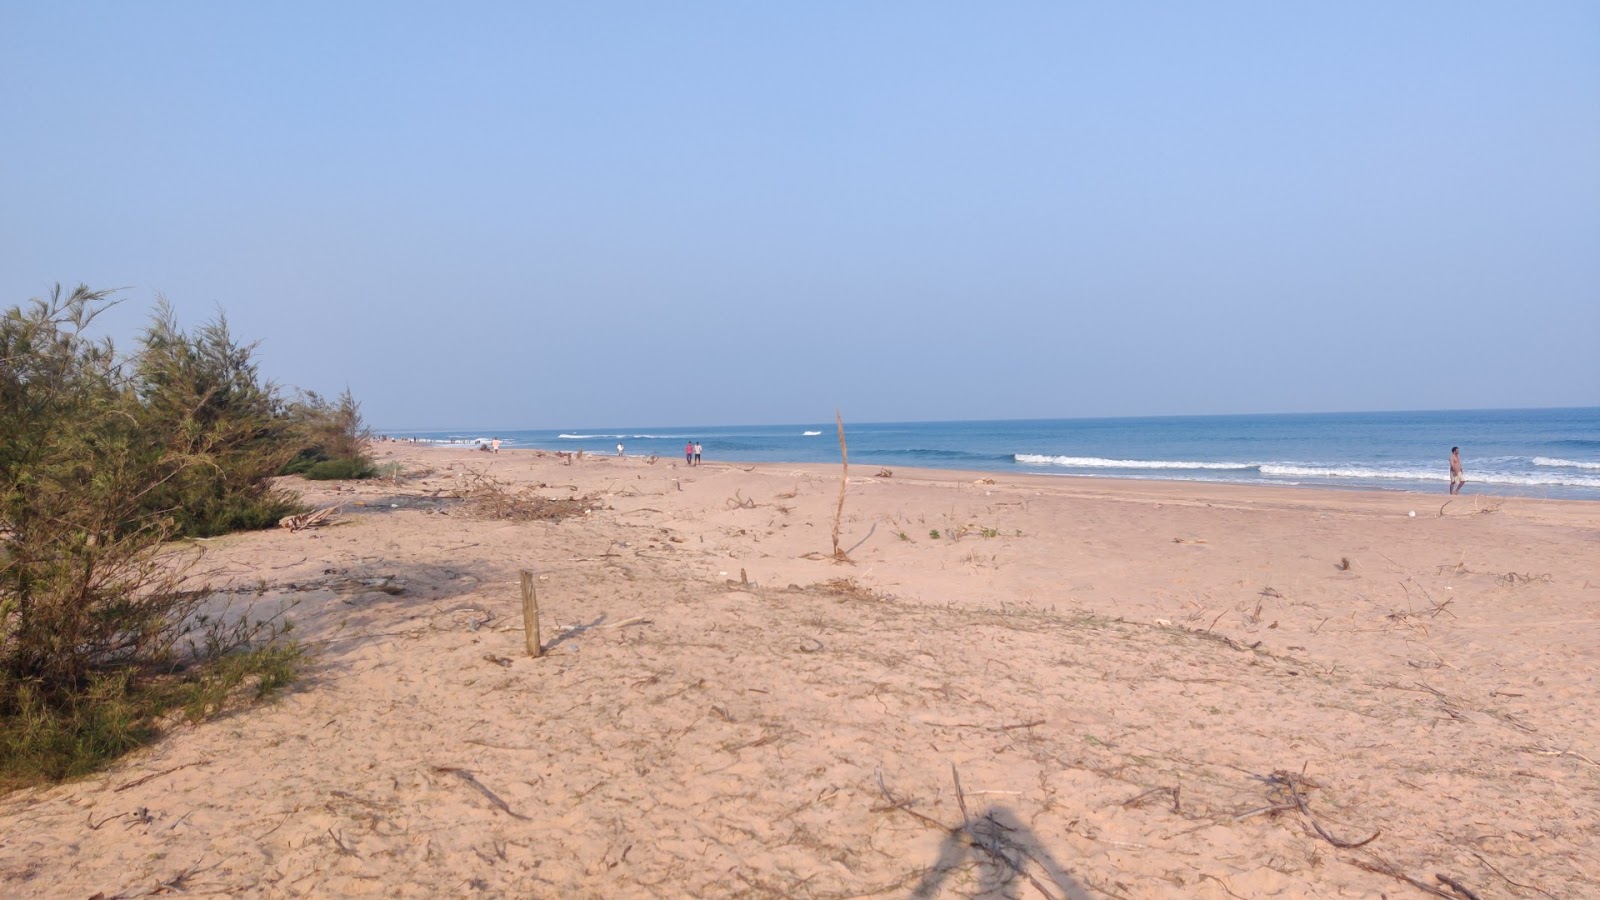 Valokuva Rajaram Puram Beachista. pinnalla kirkas hiekka:n kanssa